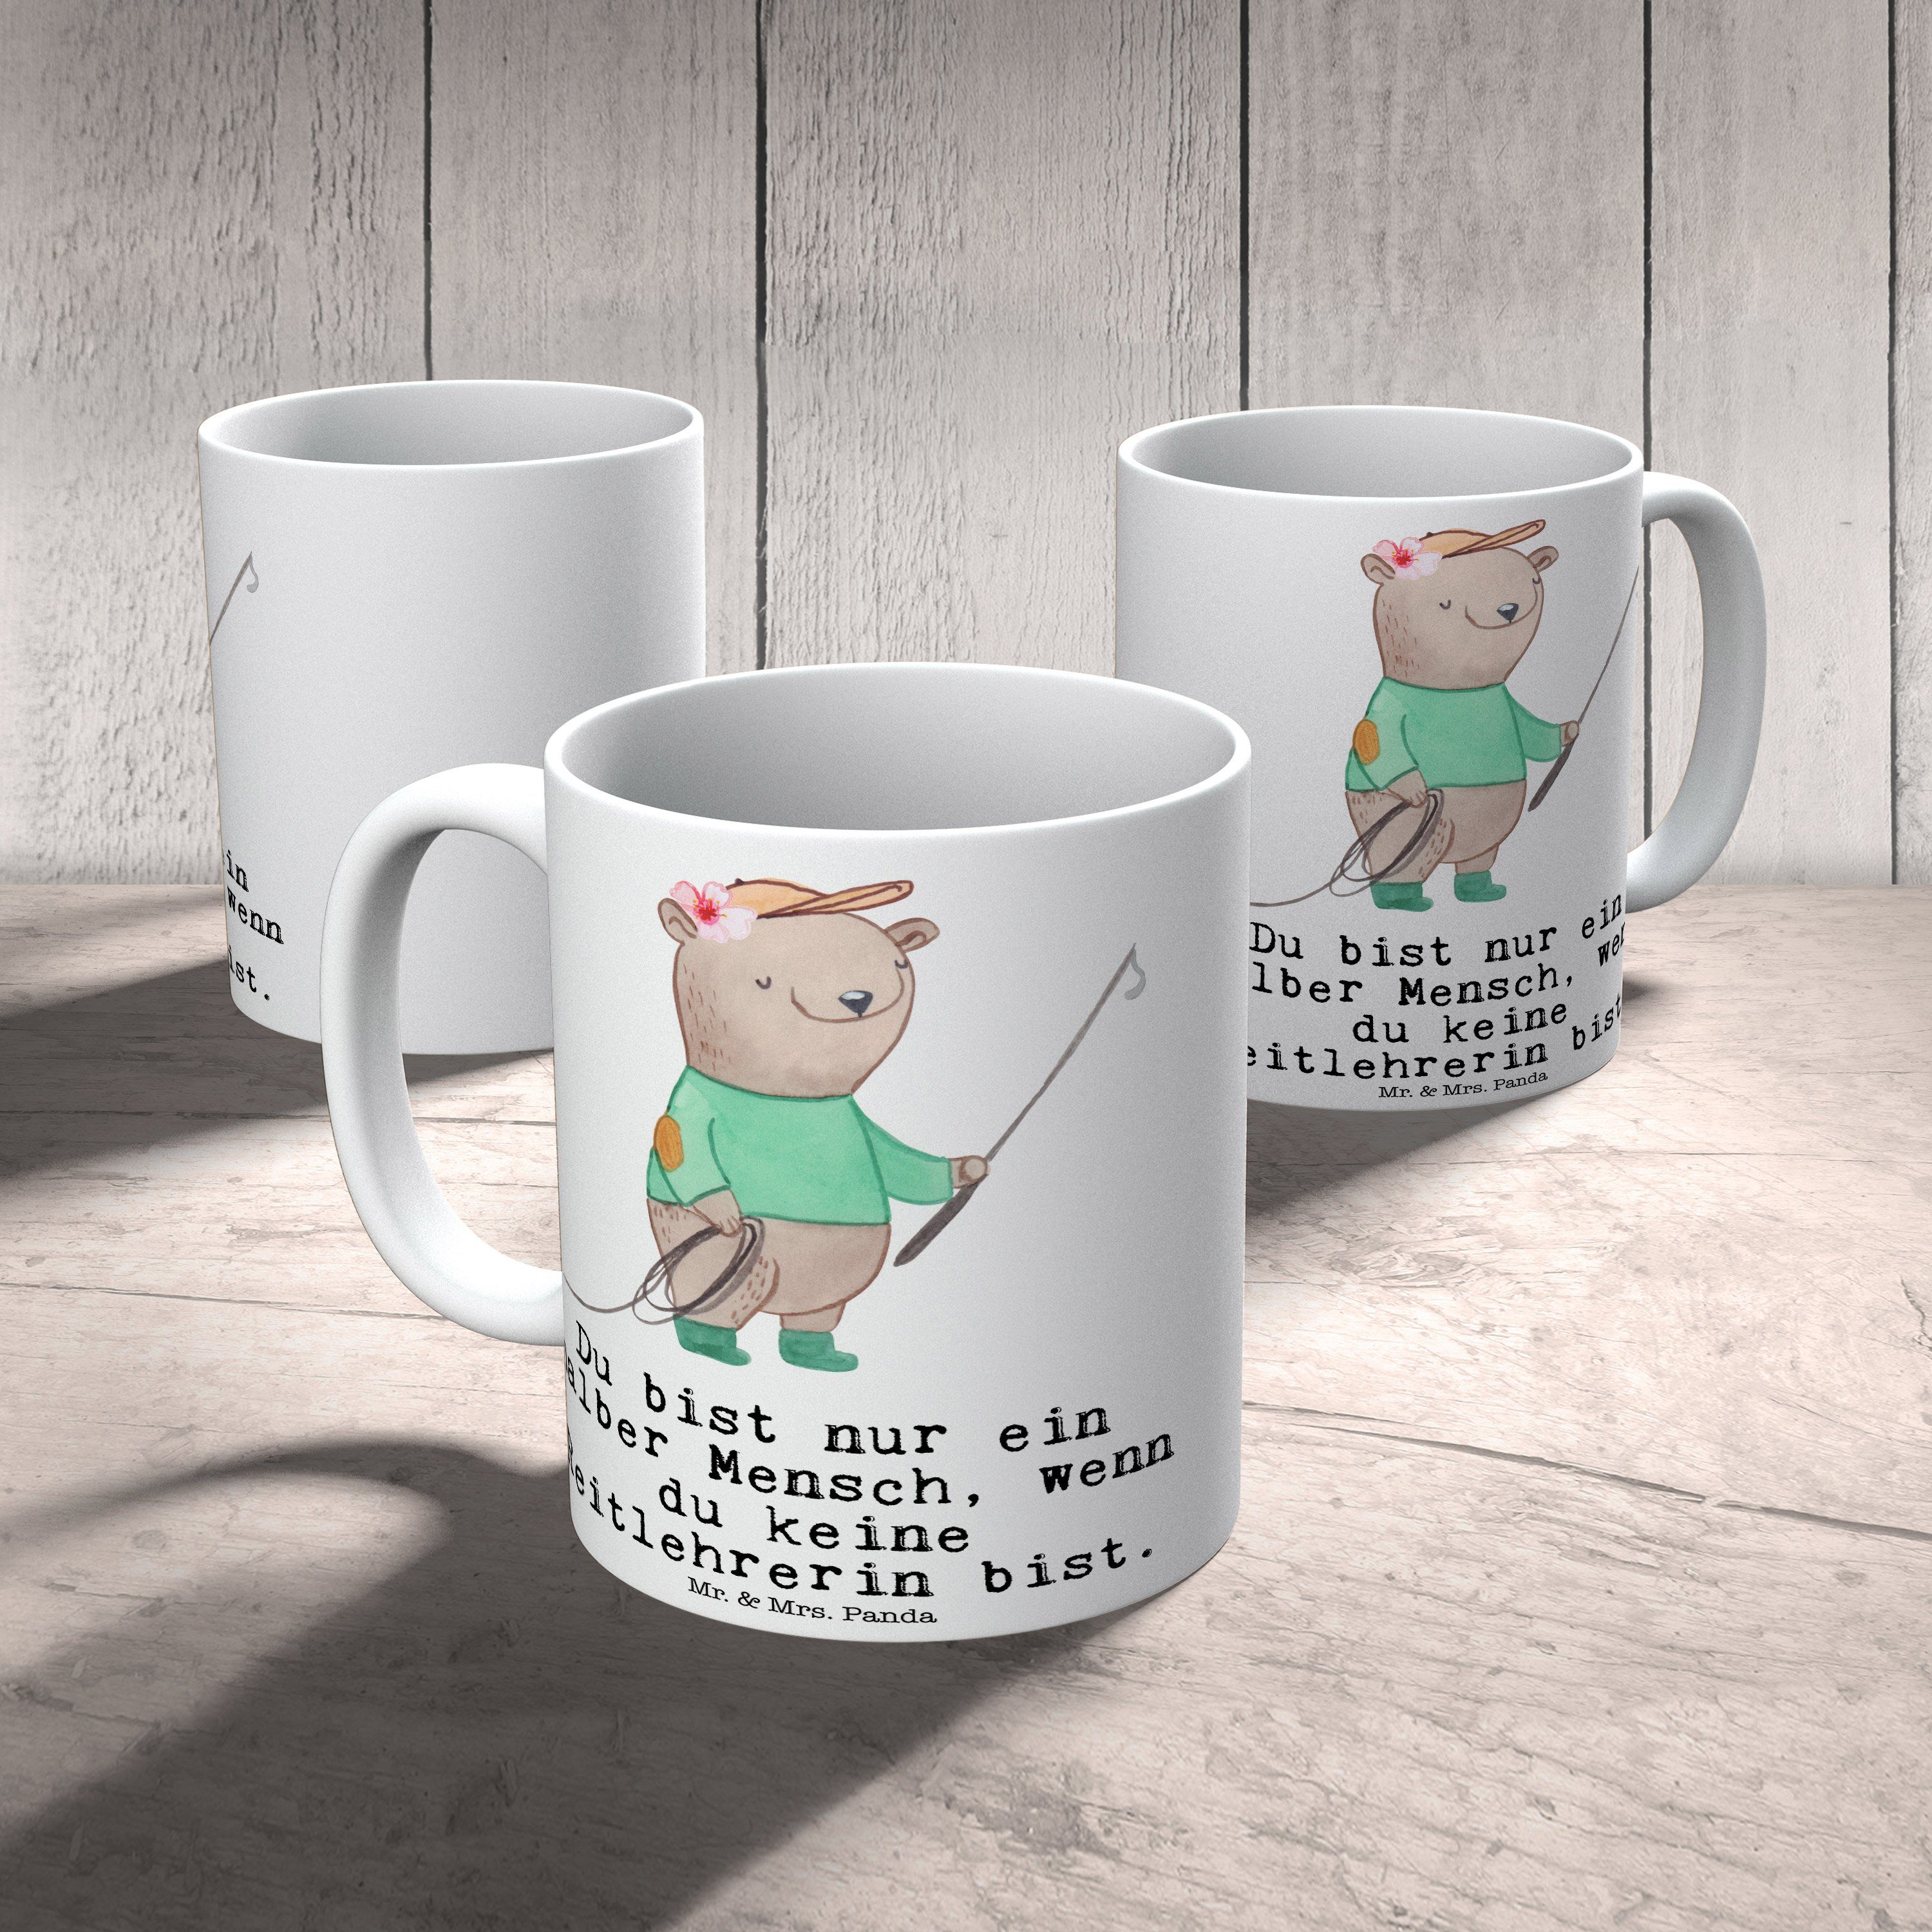 Mr. & Mrs. Panda Tasse Tasse Keramik Kaffeetasse, Weiß Reitlehrerin - Sp, Geschenk, Herz - Tasse, mit